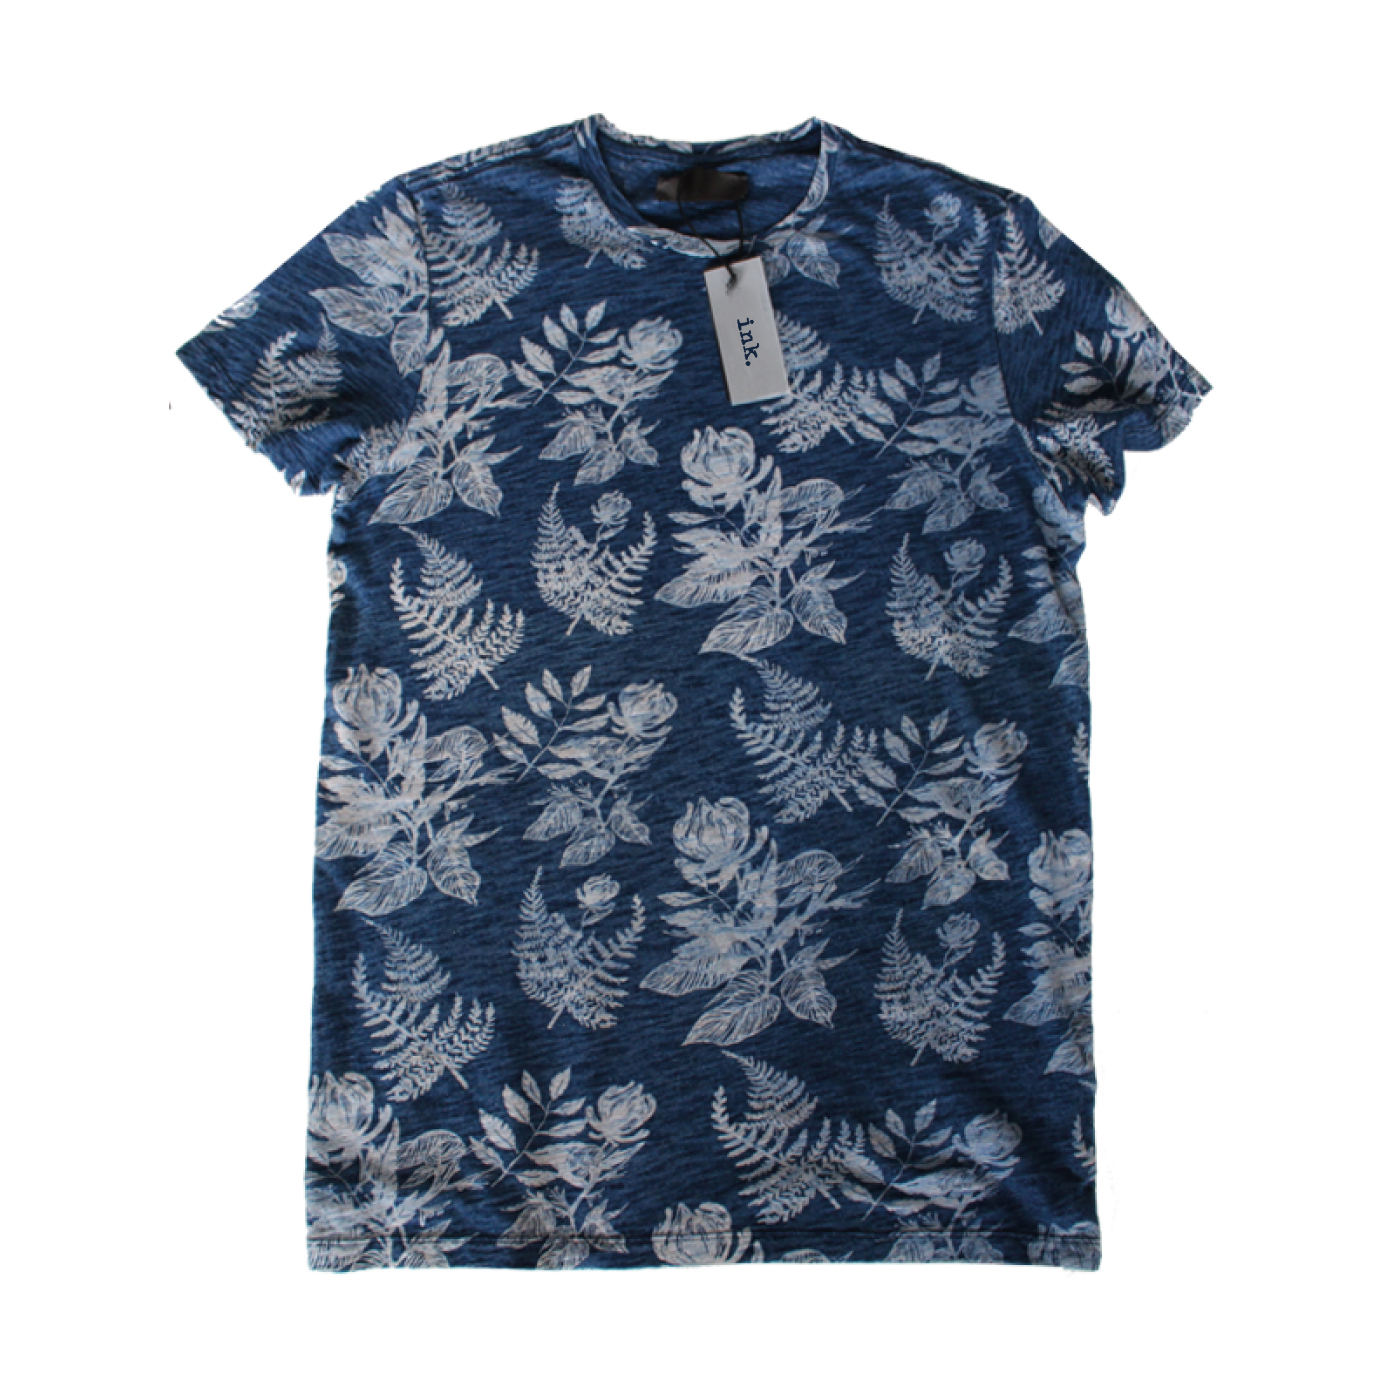 Warhol-indigo-botanical-t-shirt-1